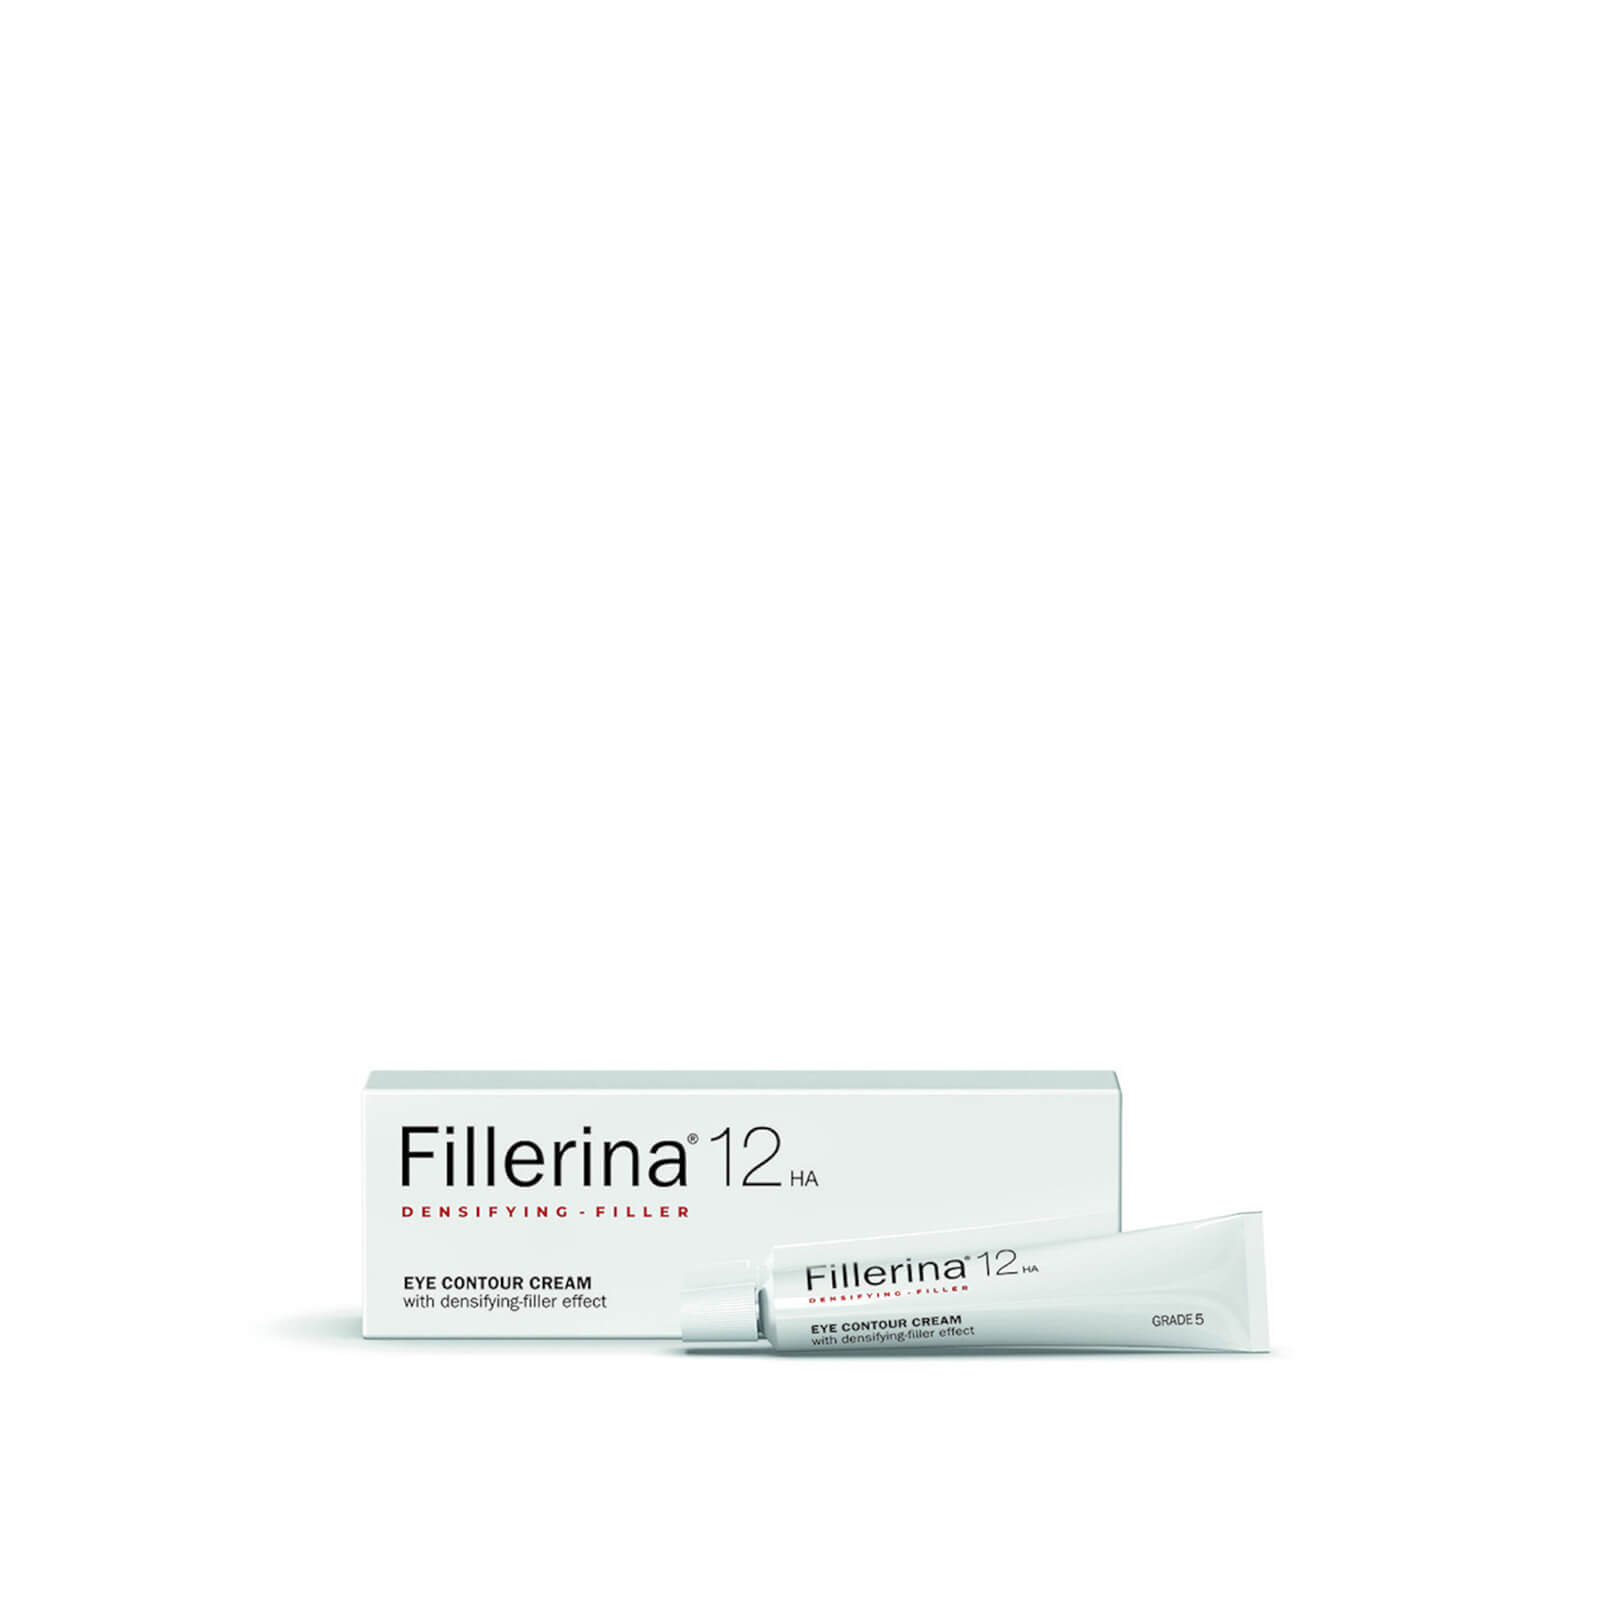 Photos - Cream / Lotion Fillerina 12 Densifying-Filler Eye Contour Cream - Grade 5 15ml 00833